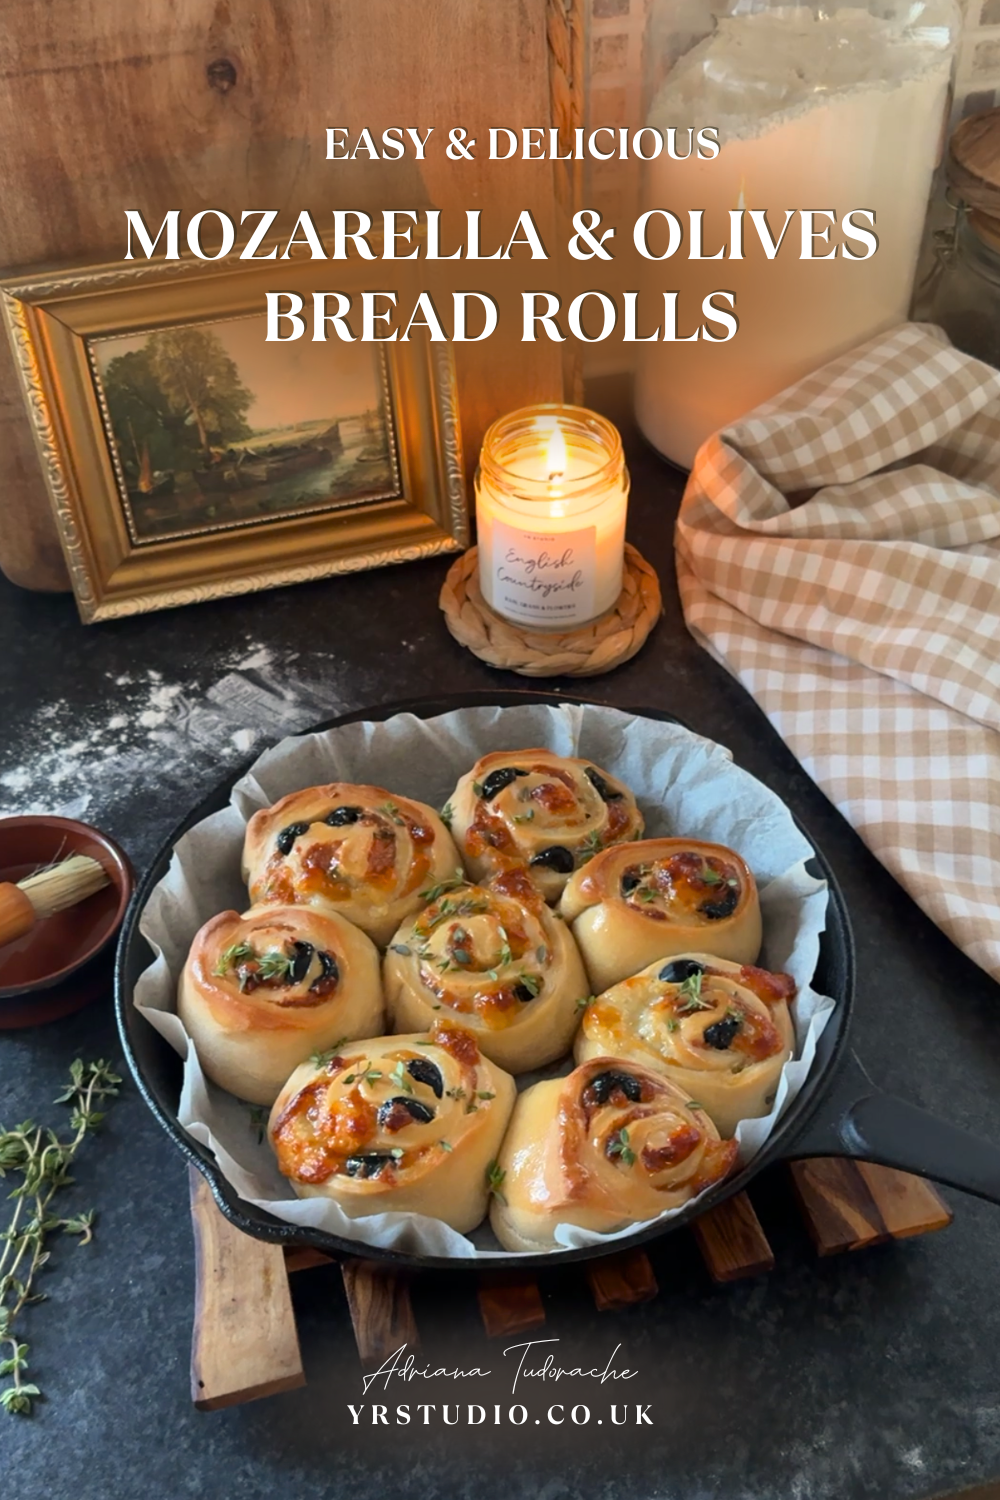 Mozzarella and olives bread rolls recipe